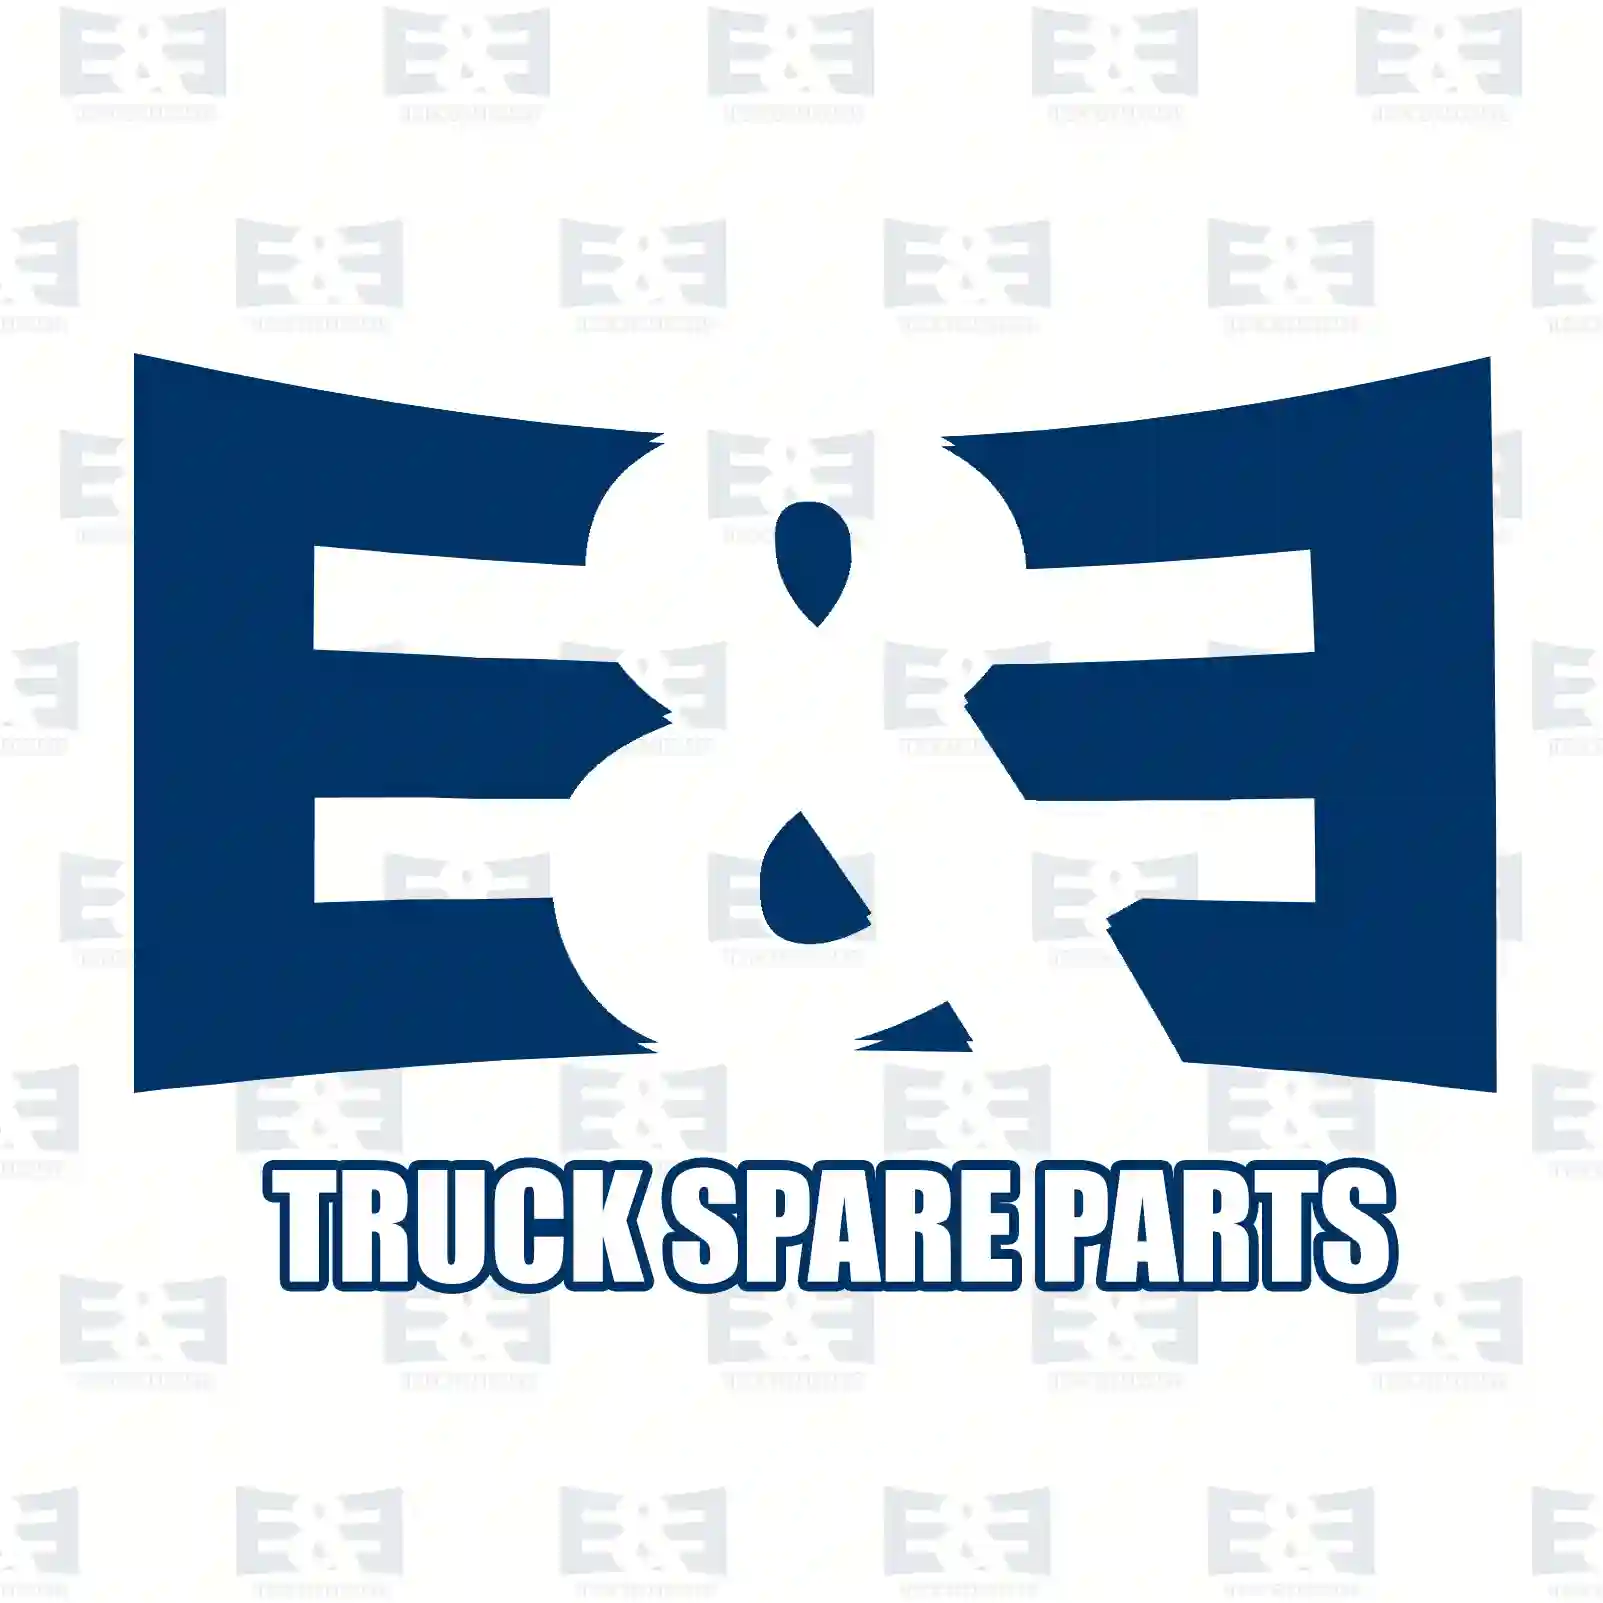 Wiper linkage, 2E2280098, 1335164, ZG21326-0008 ||  2E2280098 E&E Truck Spare Parts | Truck Spare Parts, Auotomotive Spare Parts Wiper linkage, 2E2280098, 1335164, ZG21326-0008 ||  2E2280098 E&E Truck Spare Parts | Truck Spare Parts, Auotomotive Spare Parts